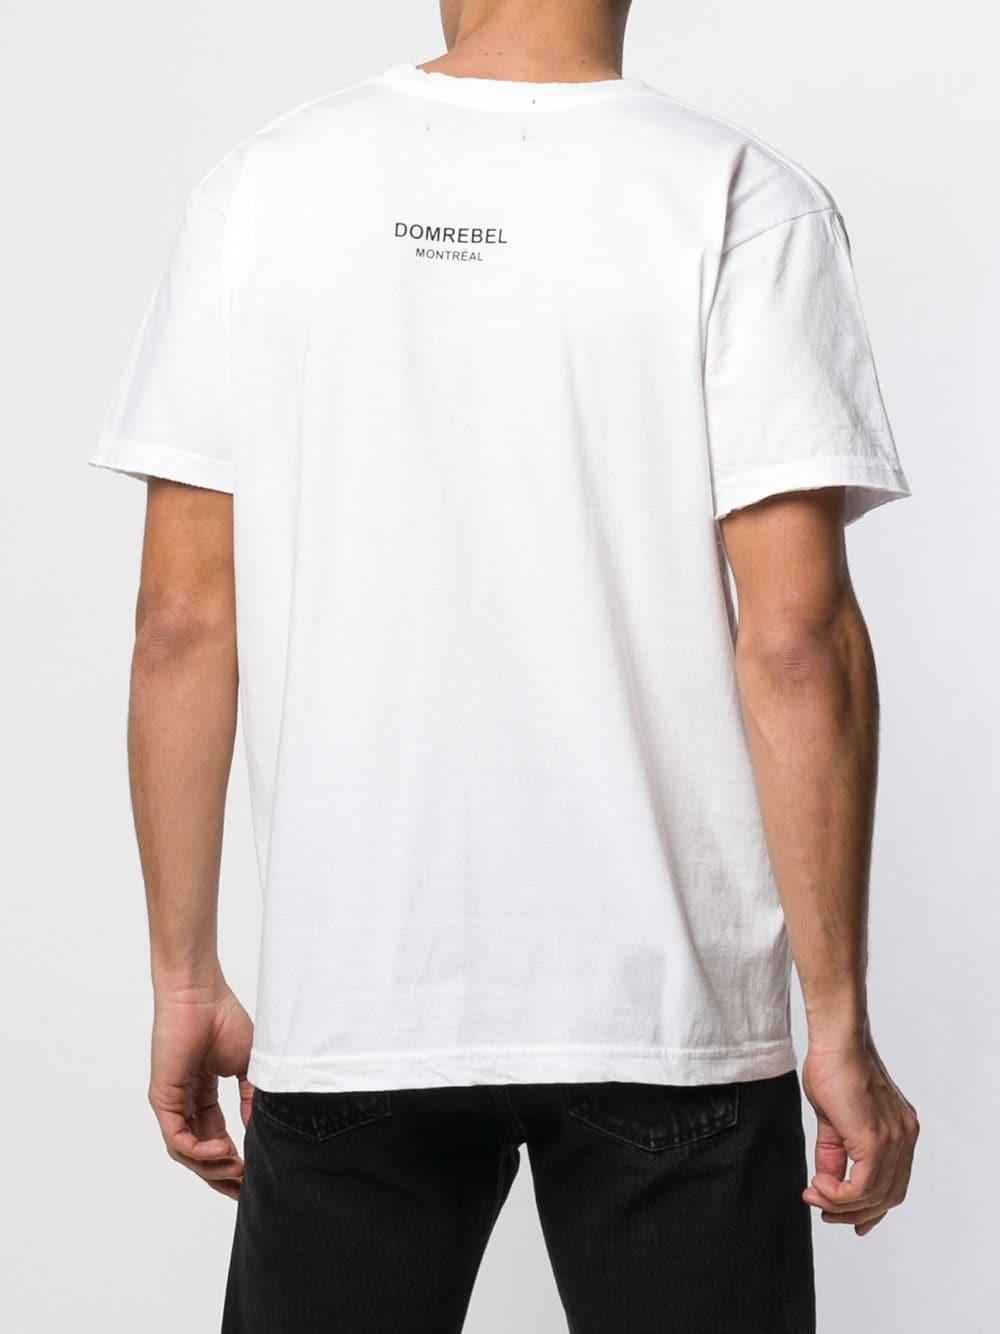 DOMREBEL Teddy Bear T-shirt in White for Men - Lyst